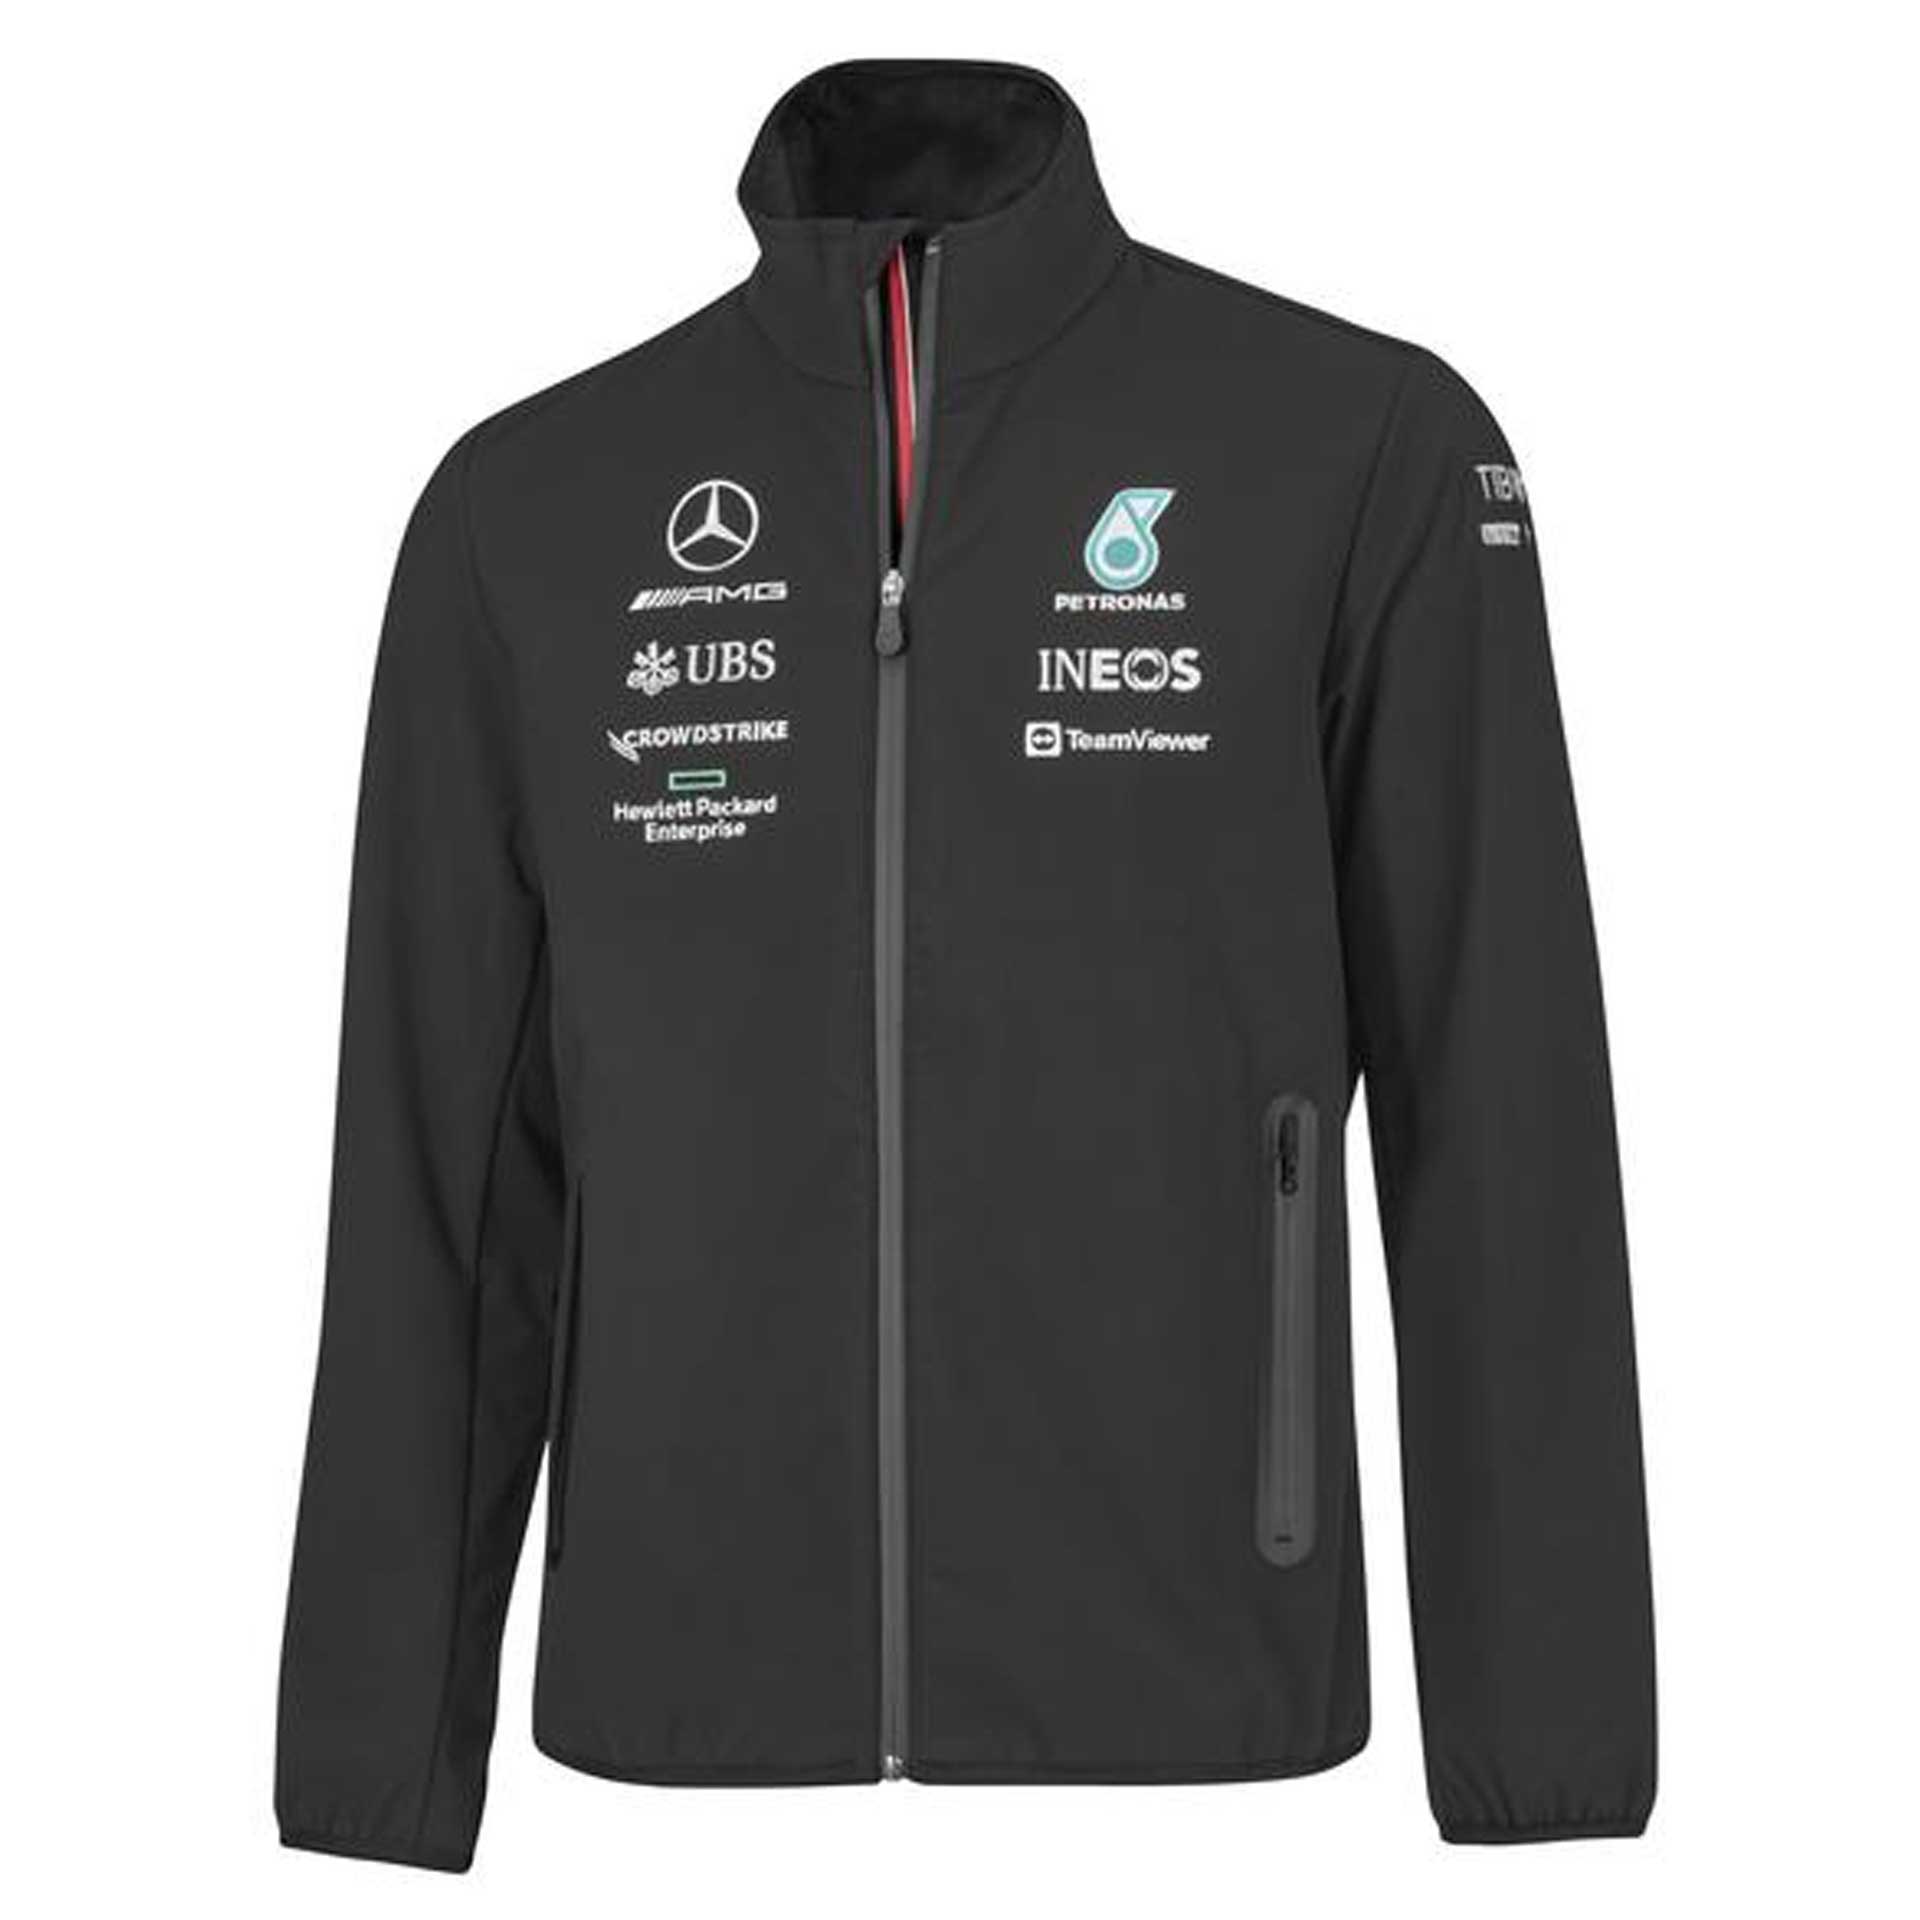 Mercedes-AMG Softshelljacke Herren schwarz Größe S B67997746